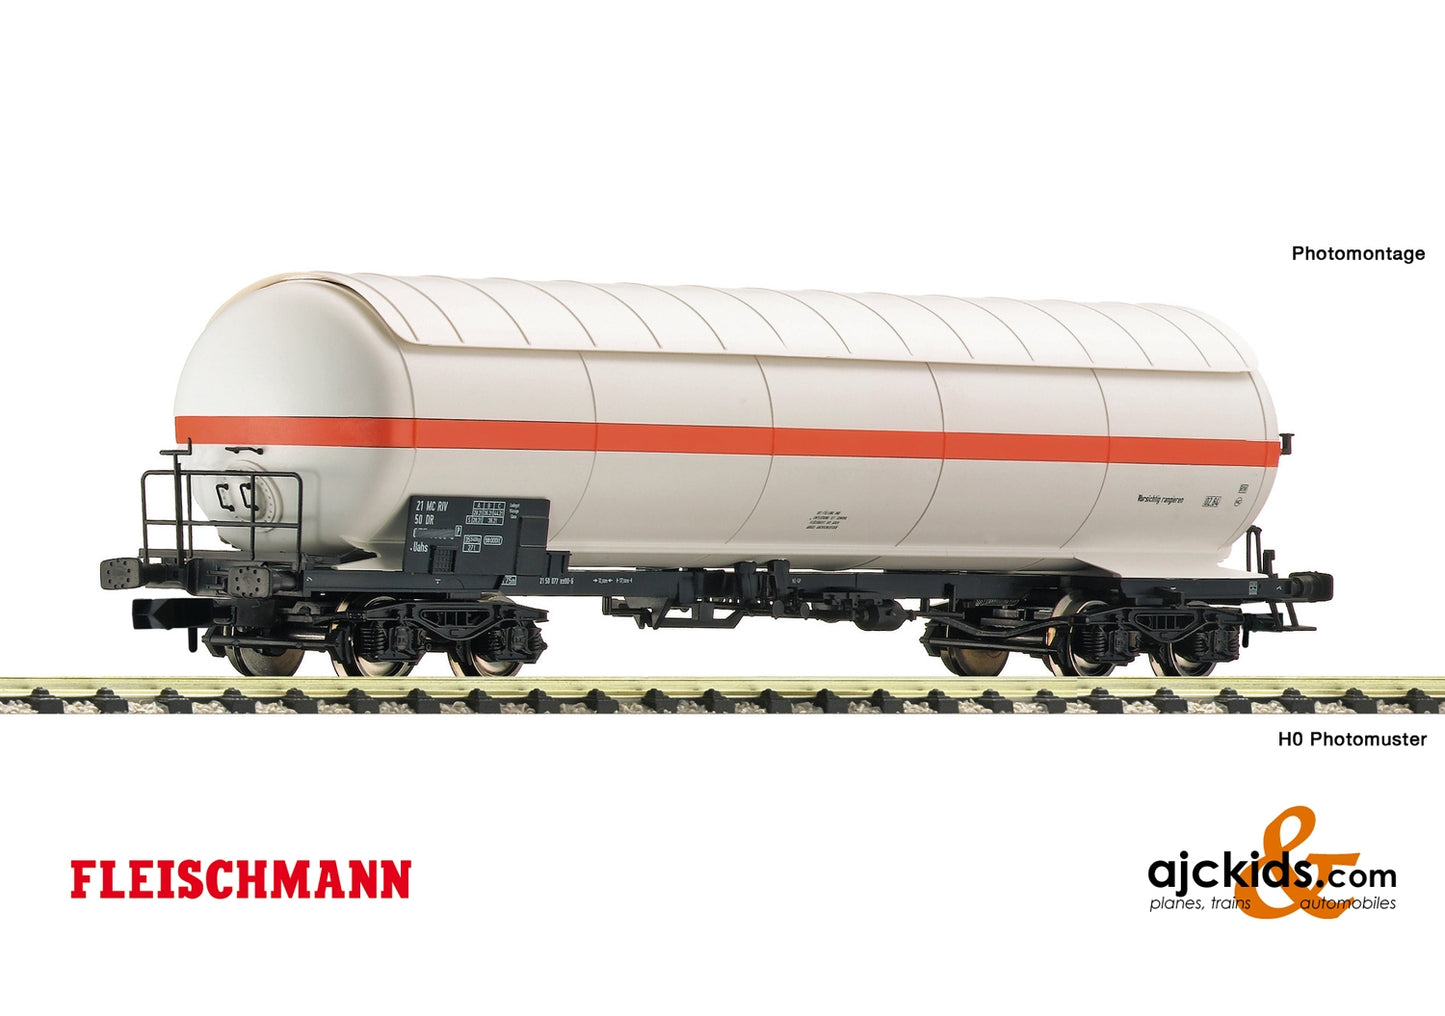 Fleischmann 849103 - Pressure gas tank wagon